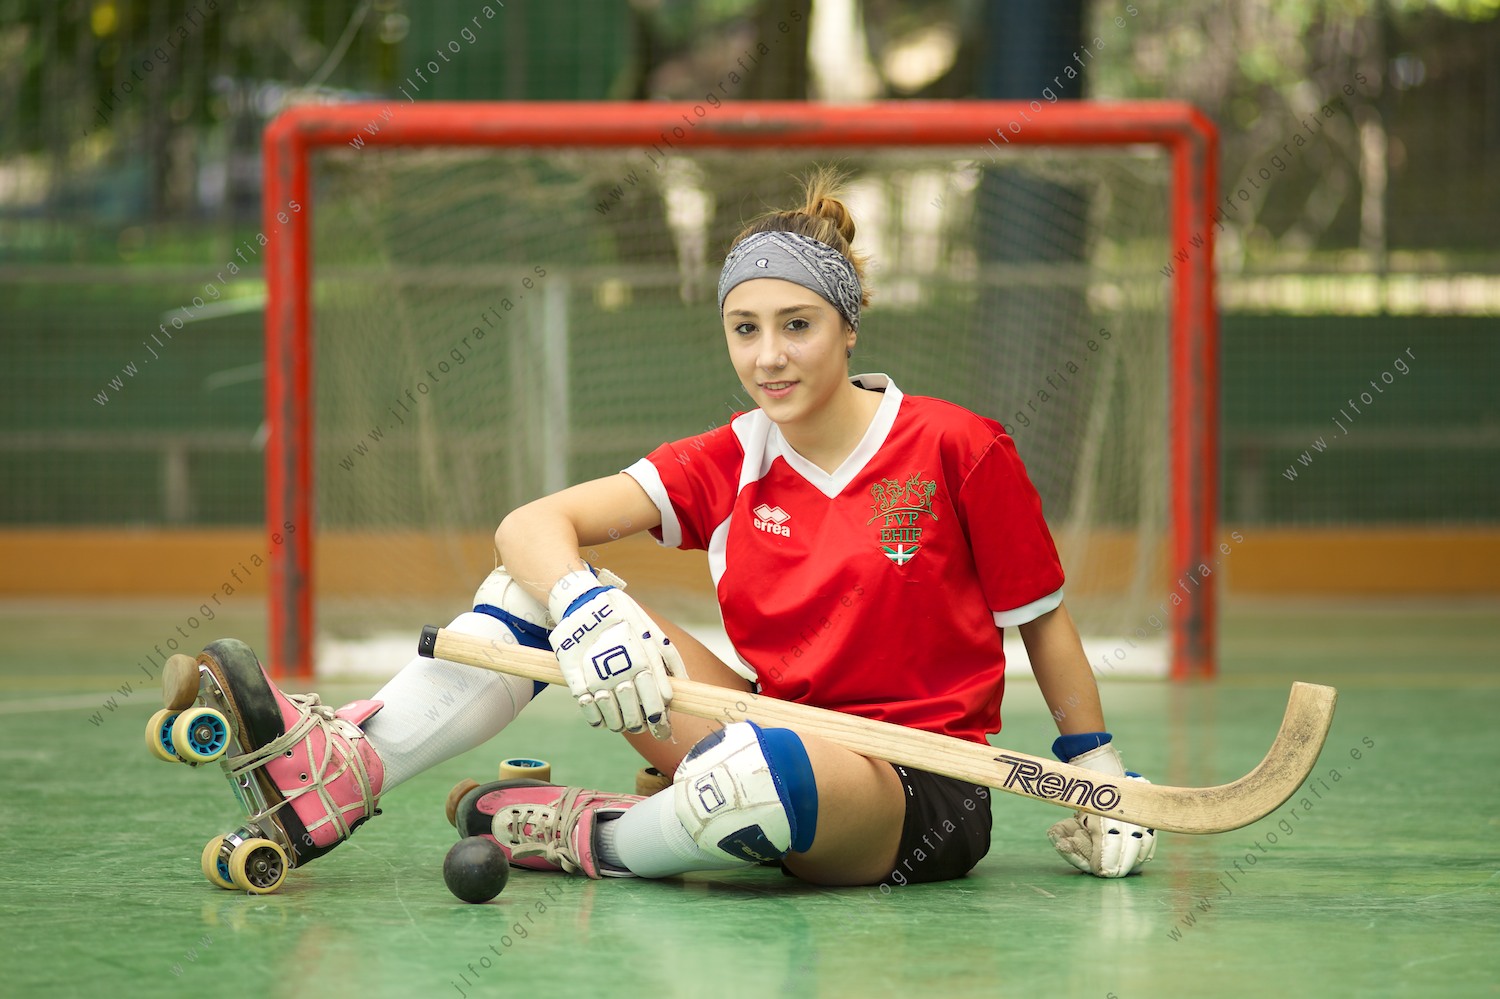 Jessica Zubía, campeona de patinaje artístico y jugadora de hockey patines, del pueblo de Barakaldo.